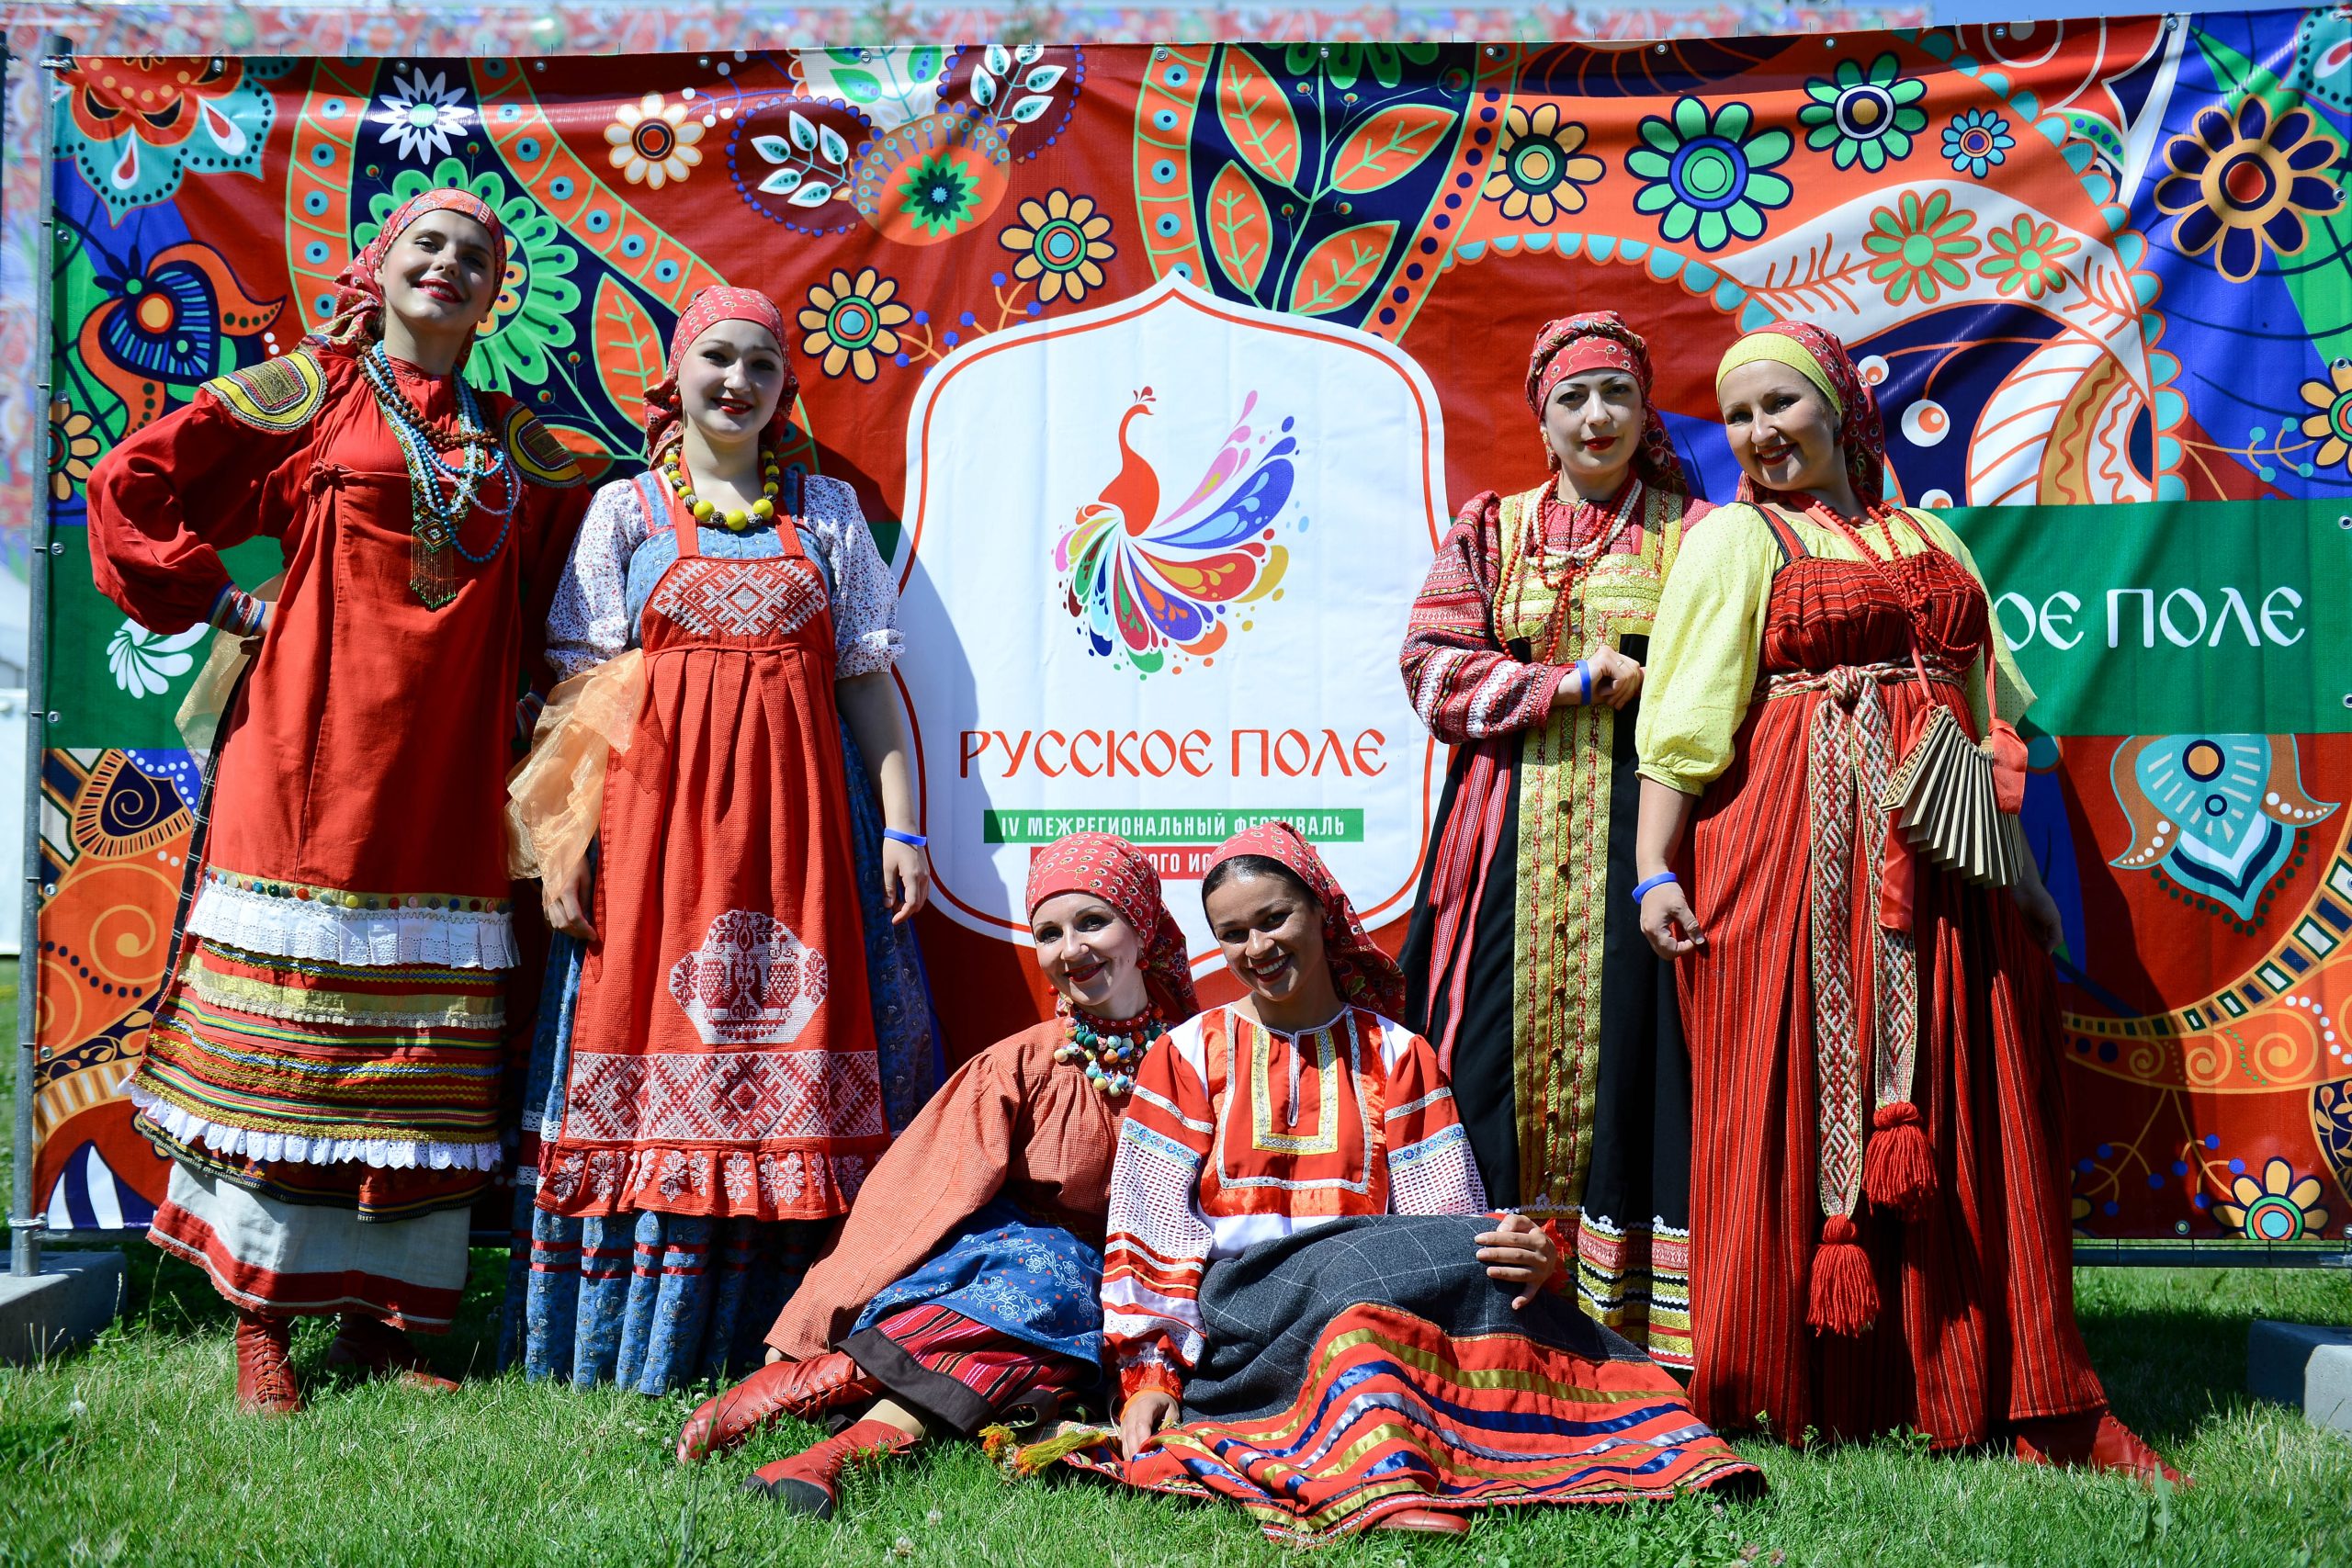 Фестиваль «Русское поле» пройдет на территории музея-заповедника «Коломенское»